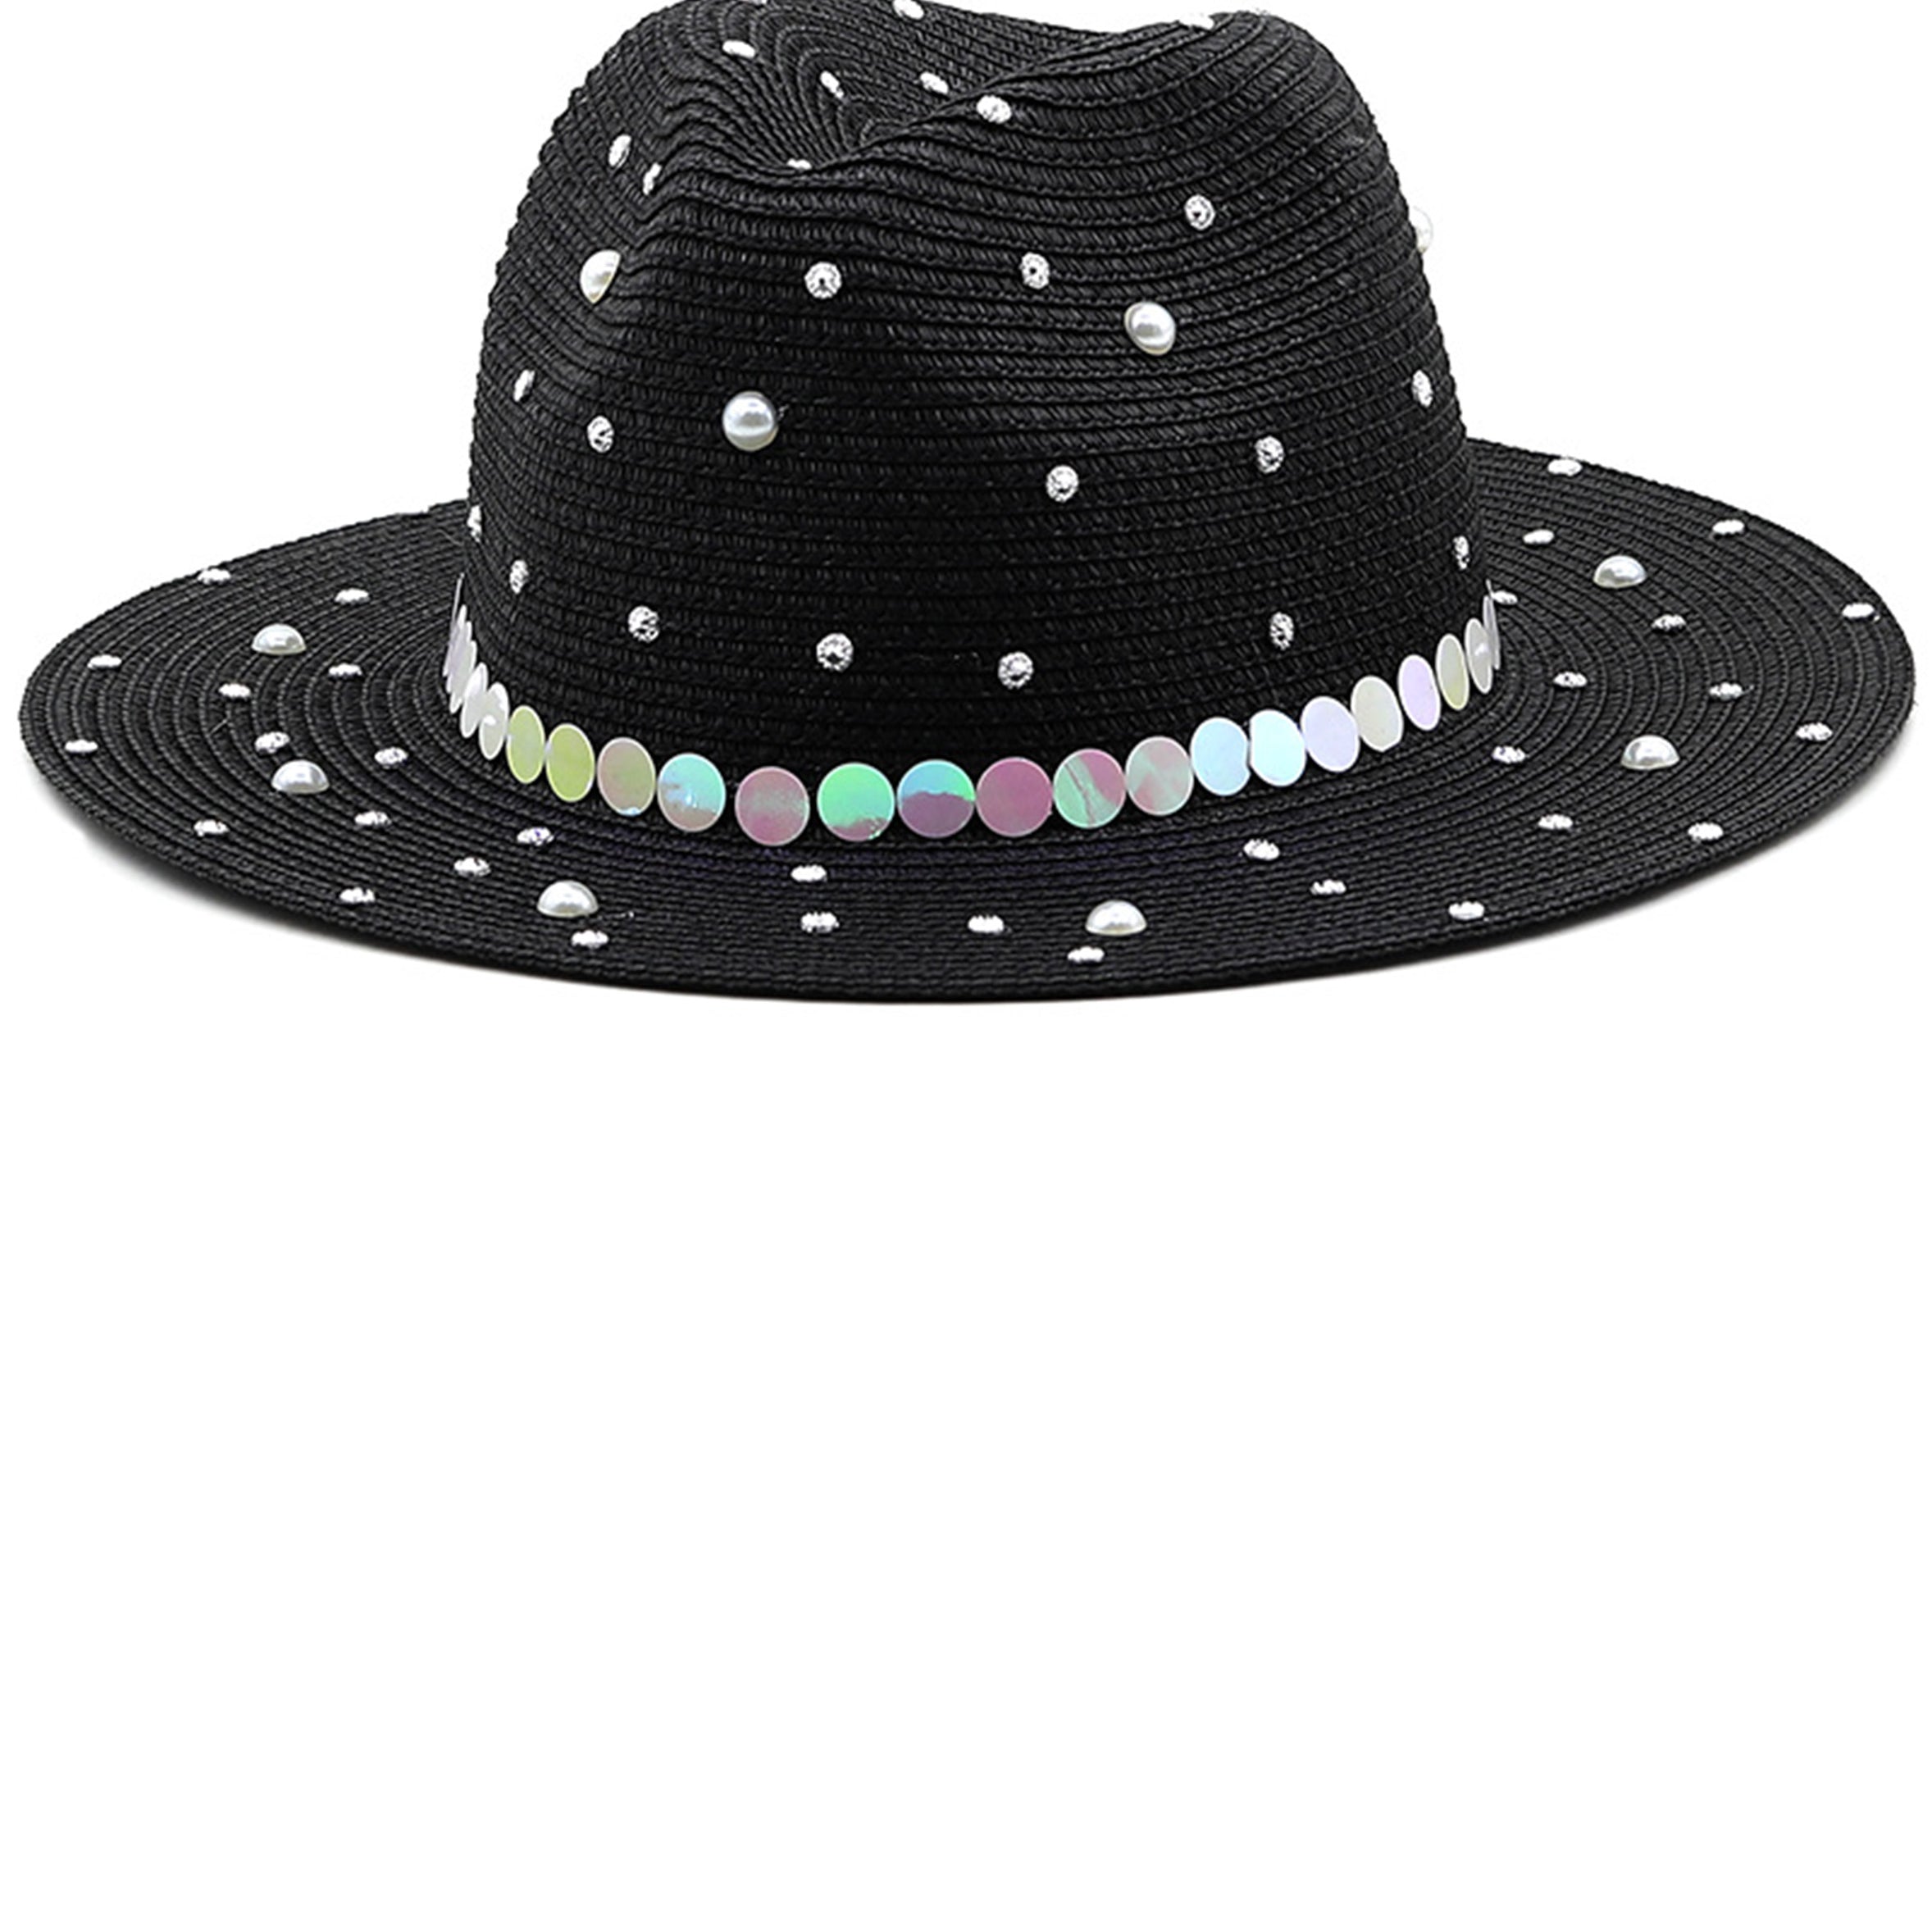 Pearl Rhinestone Straw Hat C0608